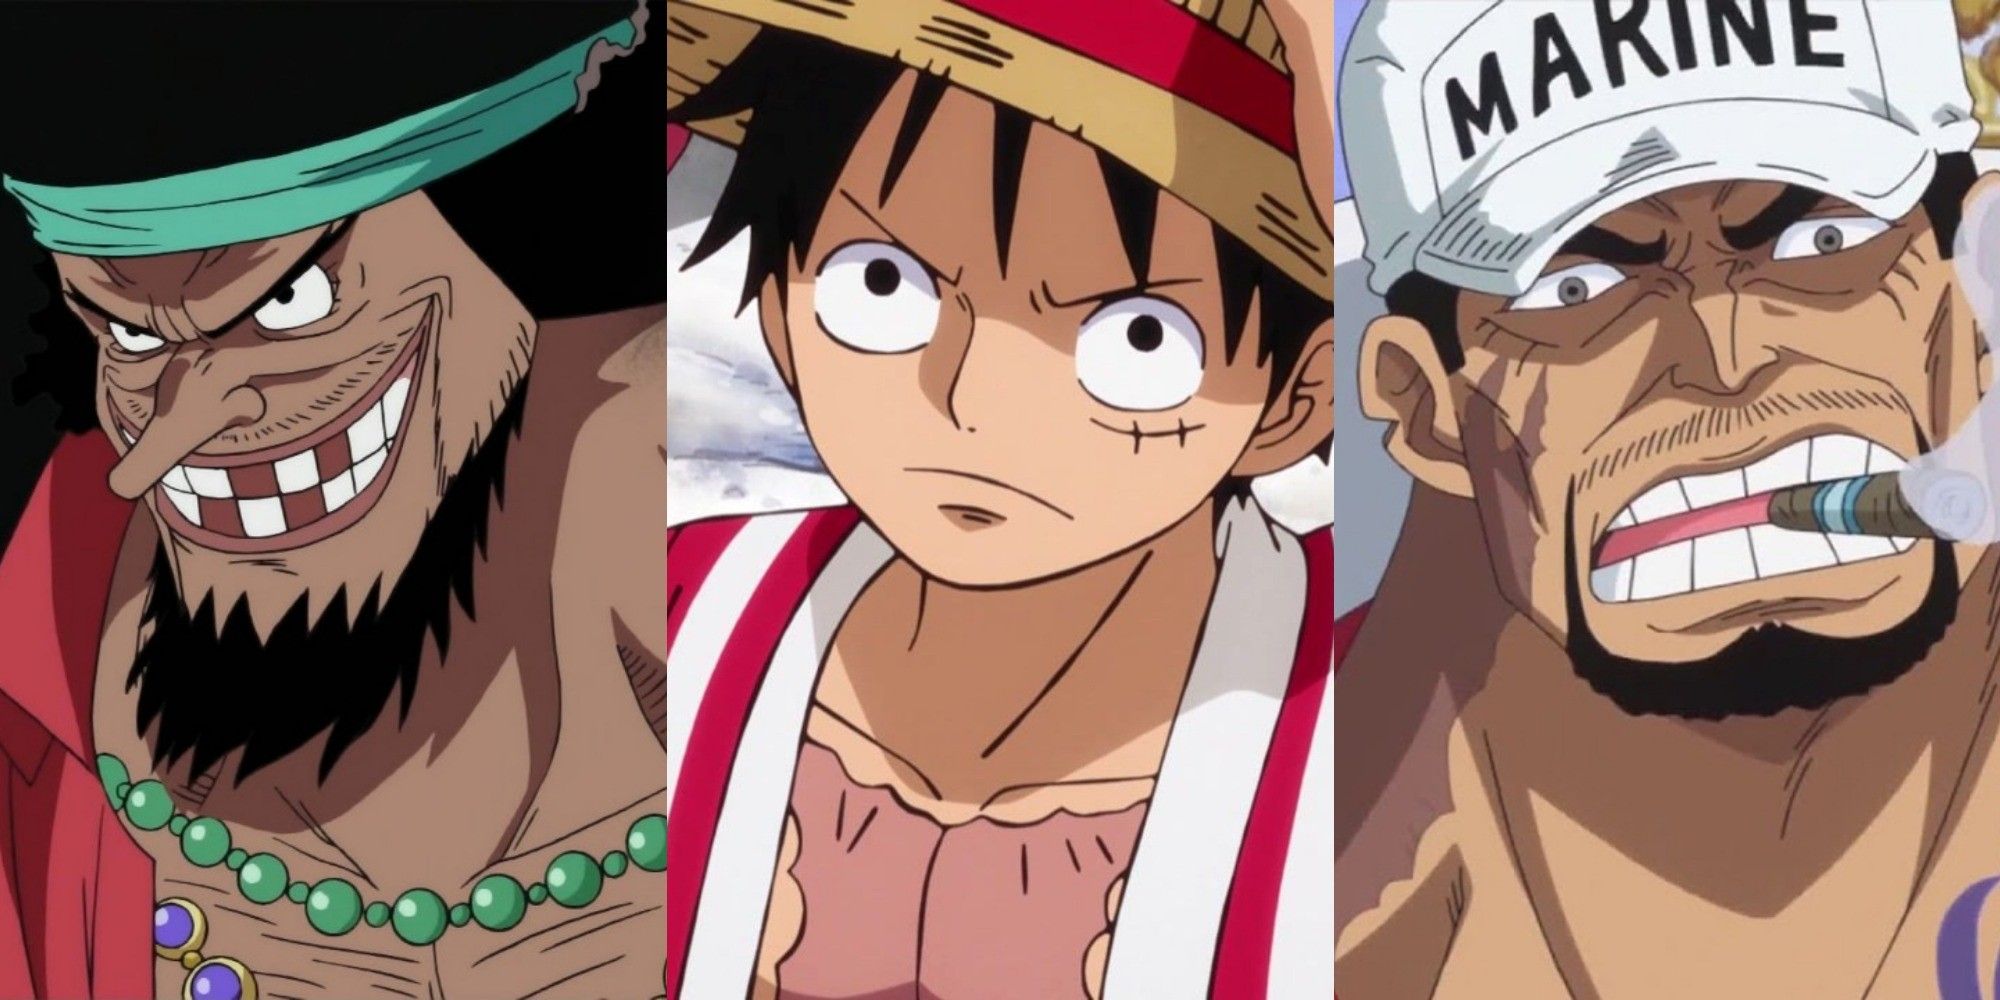 Da sinistra a destra: Barbanera, Rufy e Akainu di One Piece